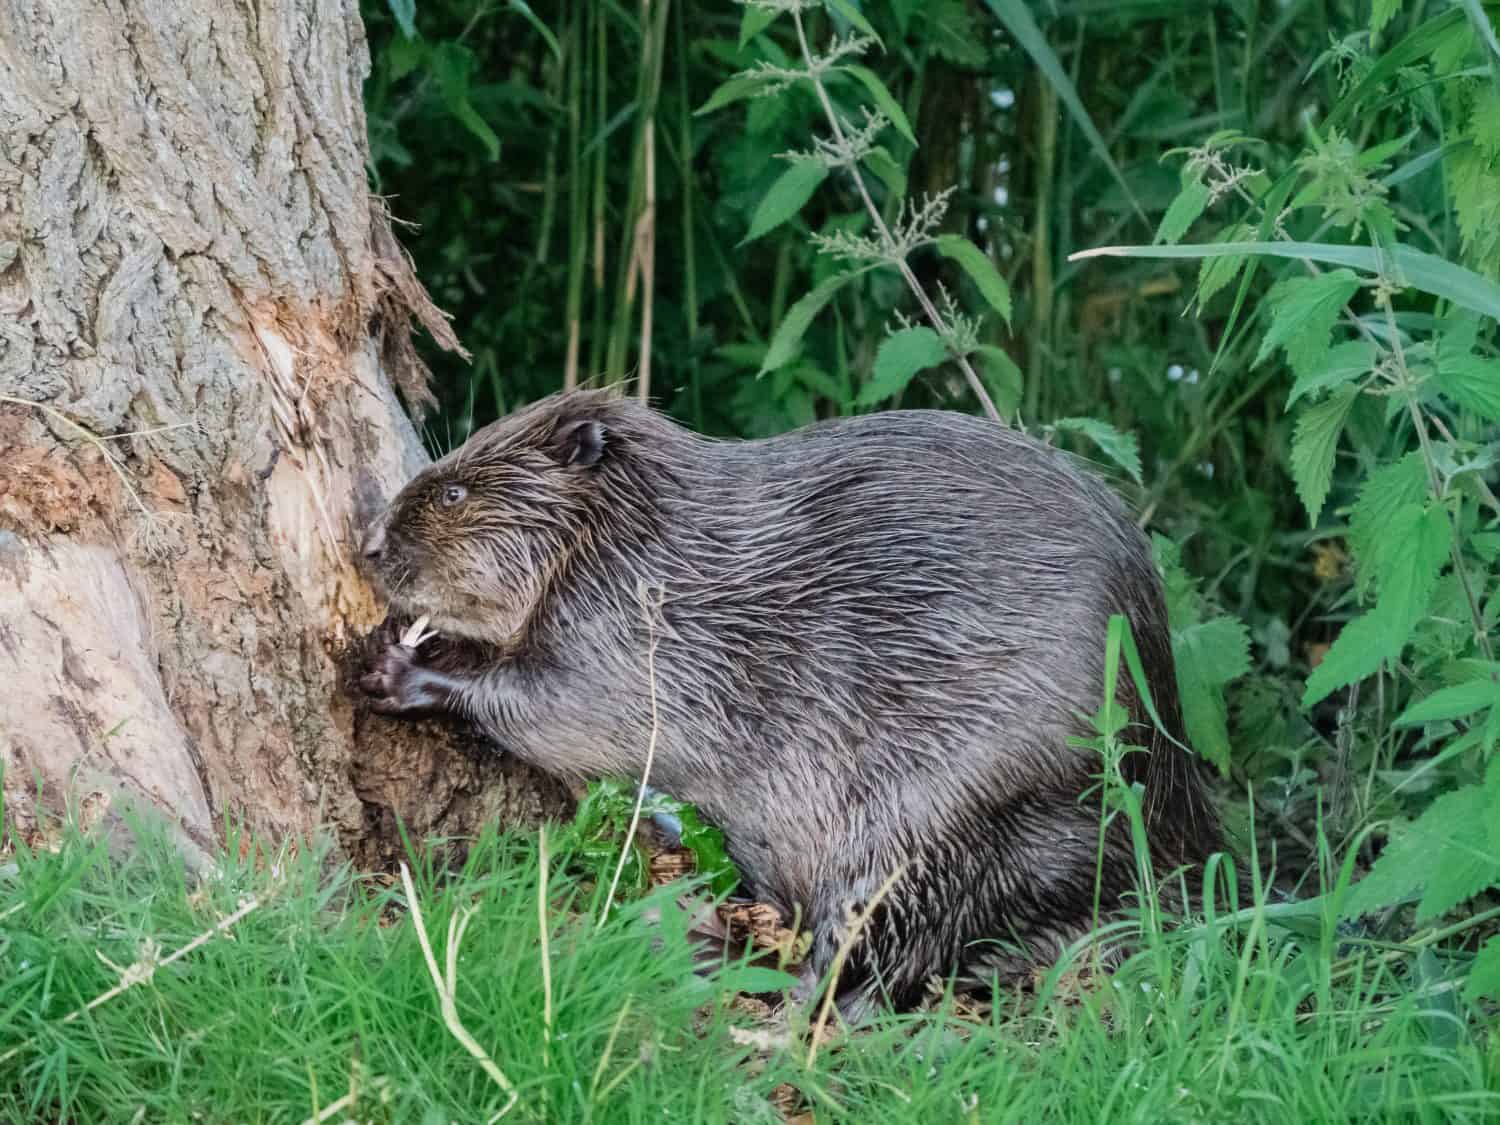 Beaver eating away at bark of a tree